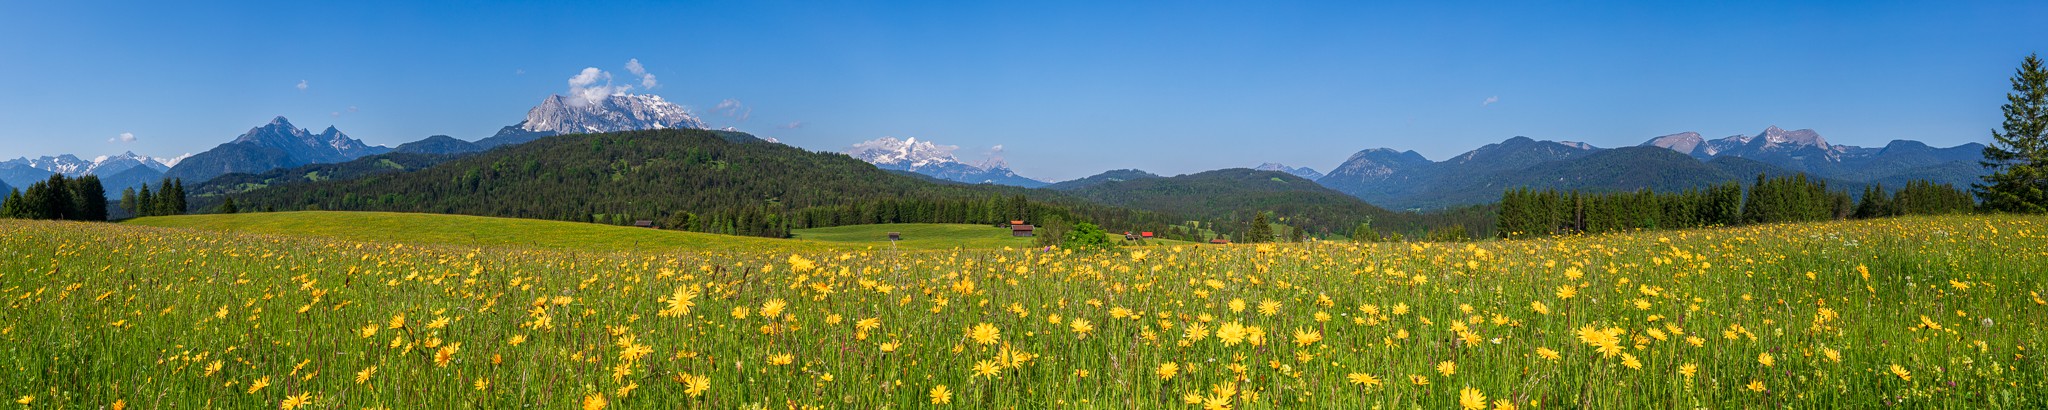 Blumenwiese in den Bergen Panorama. Wiesenblick von den Buckelwiesen zwischen Krün und Mittenwald auf das Wettersteingebirge.